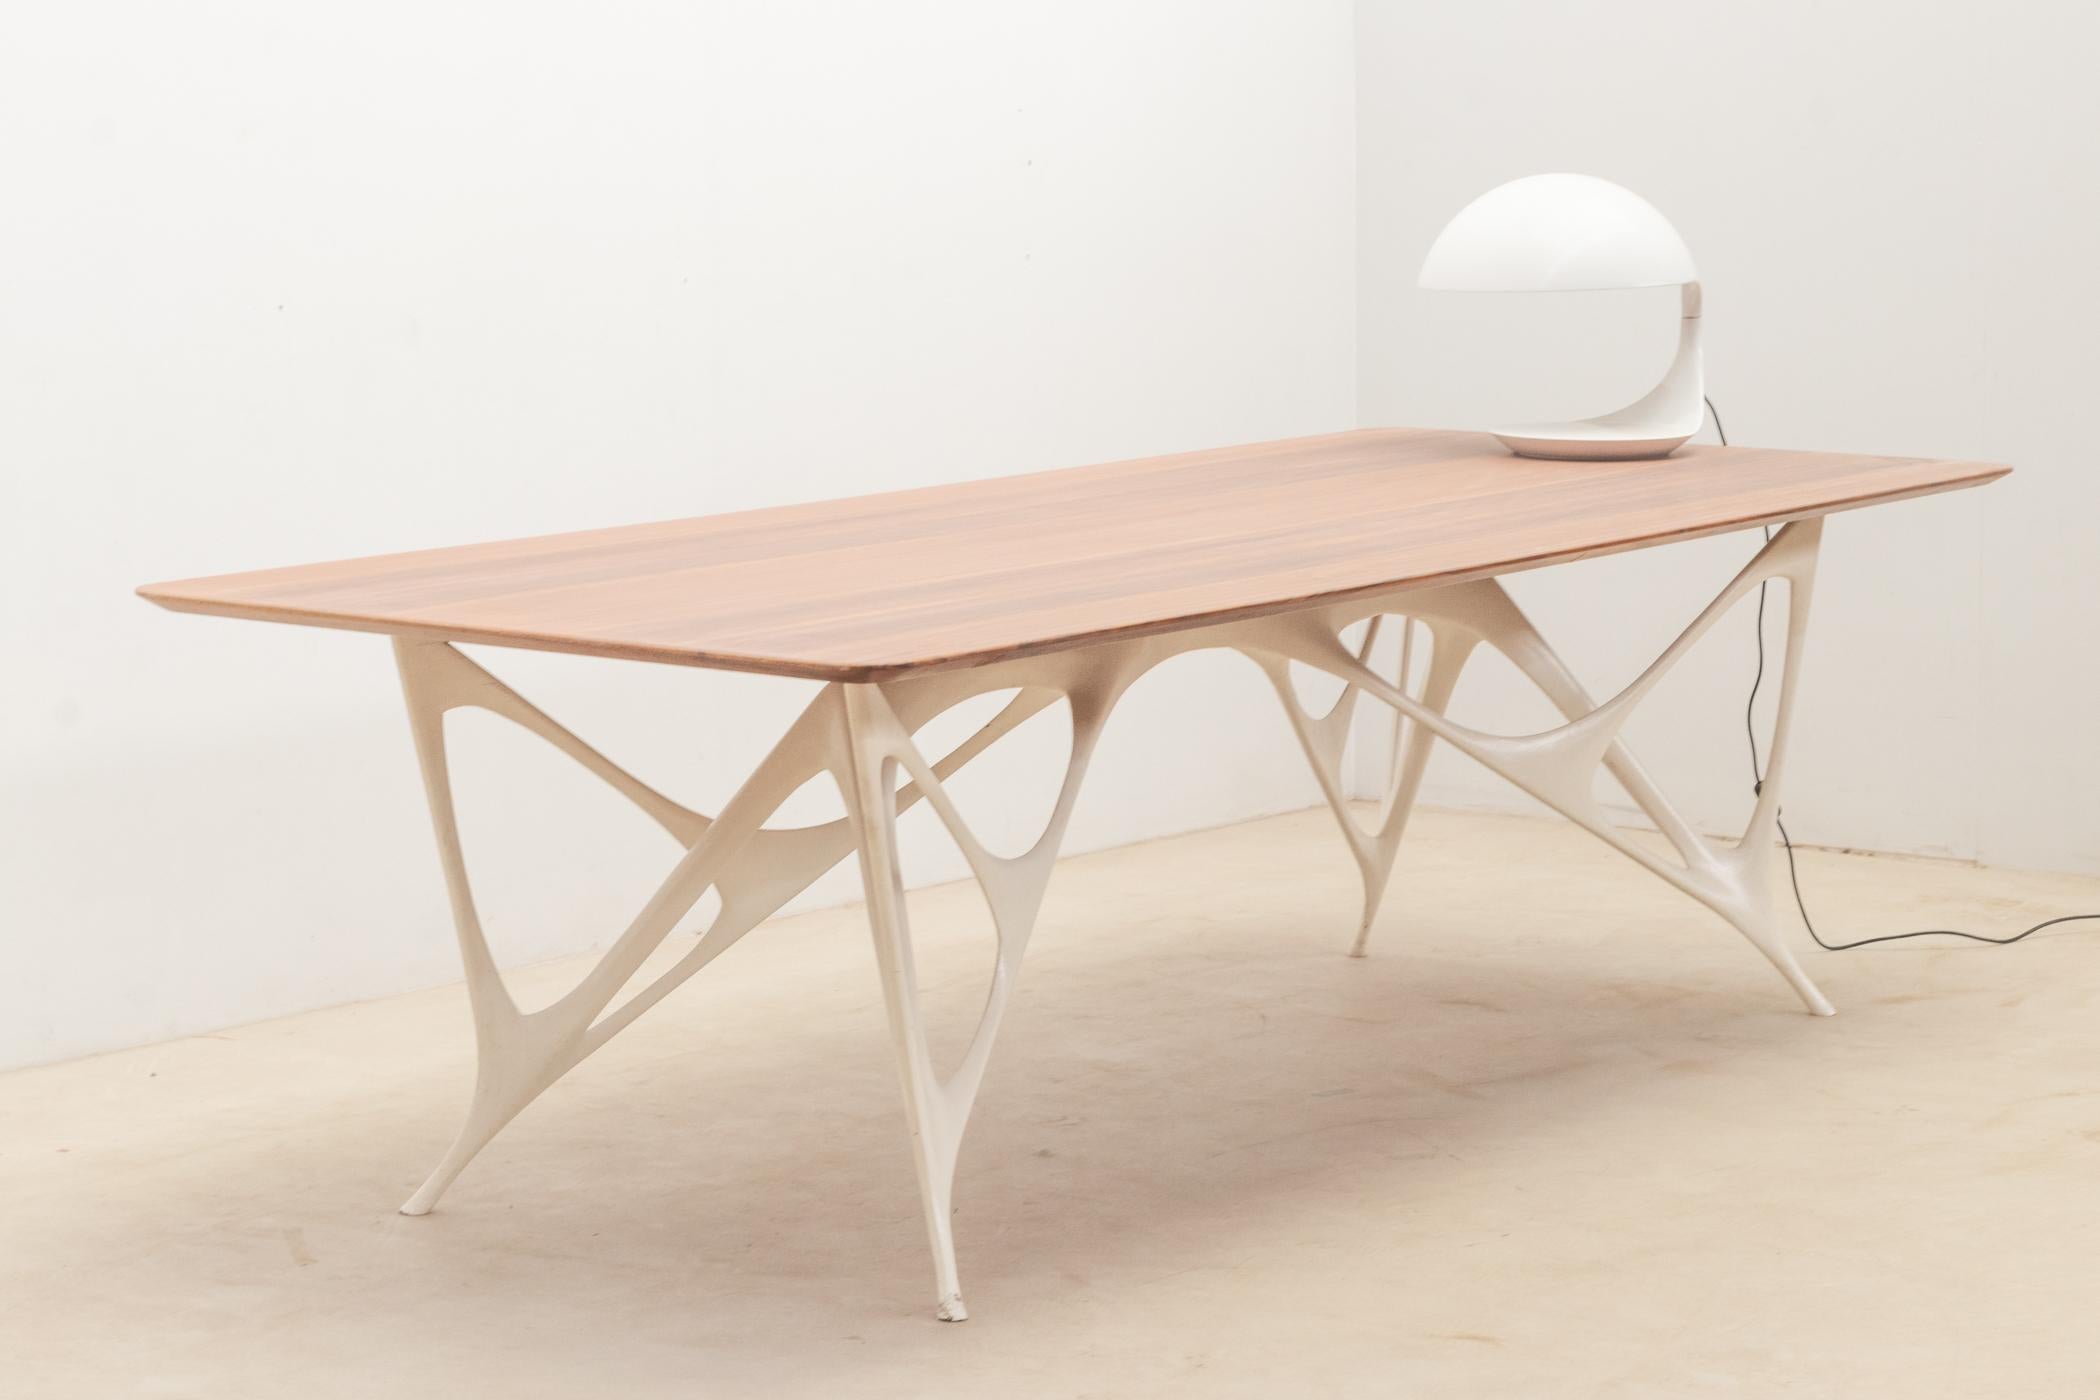 Contemporary Architectural table by Le Opere e i Giorni studio For Sale